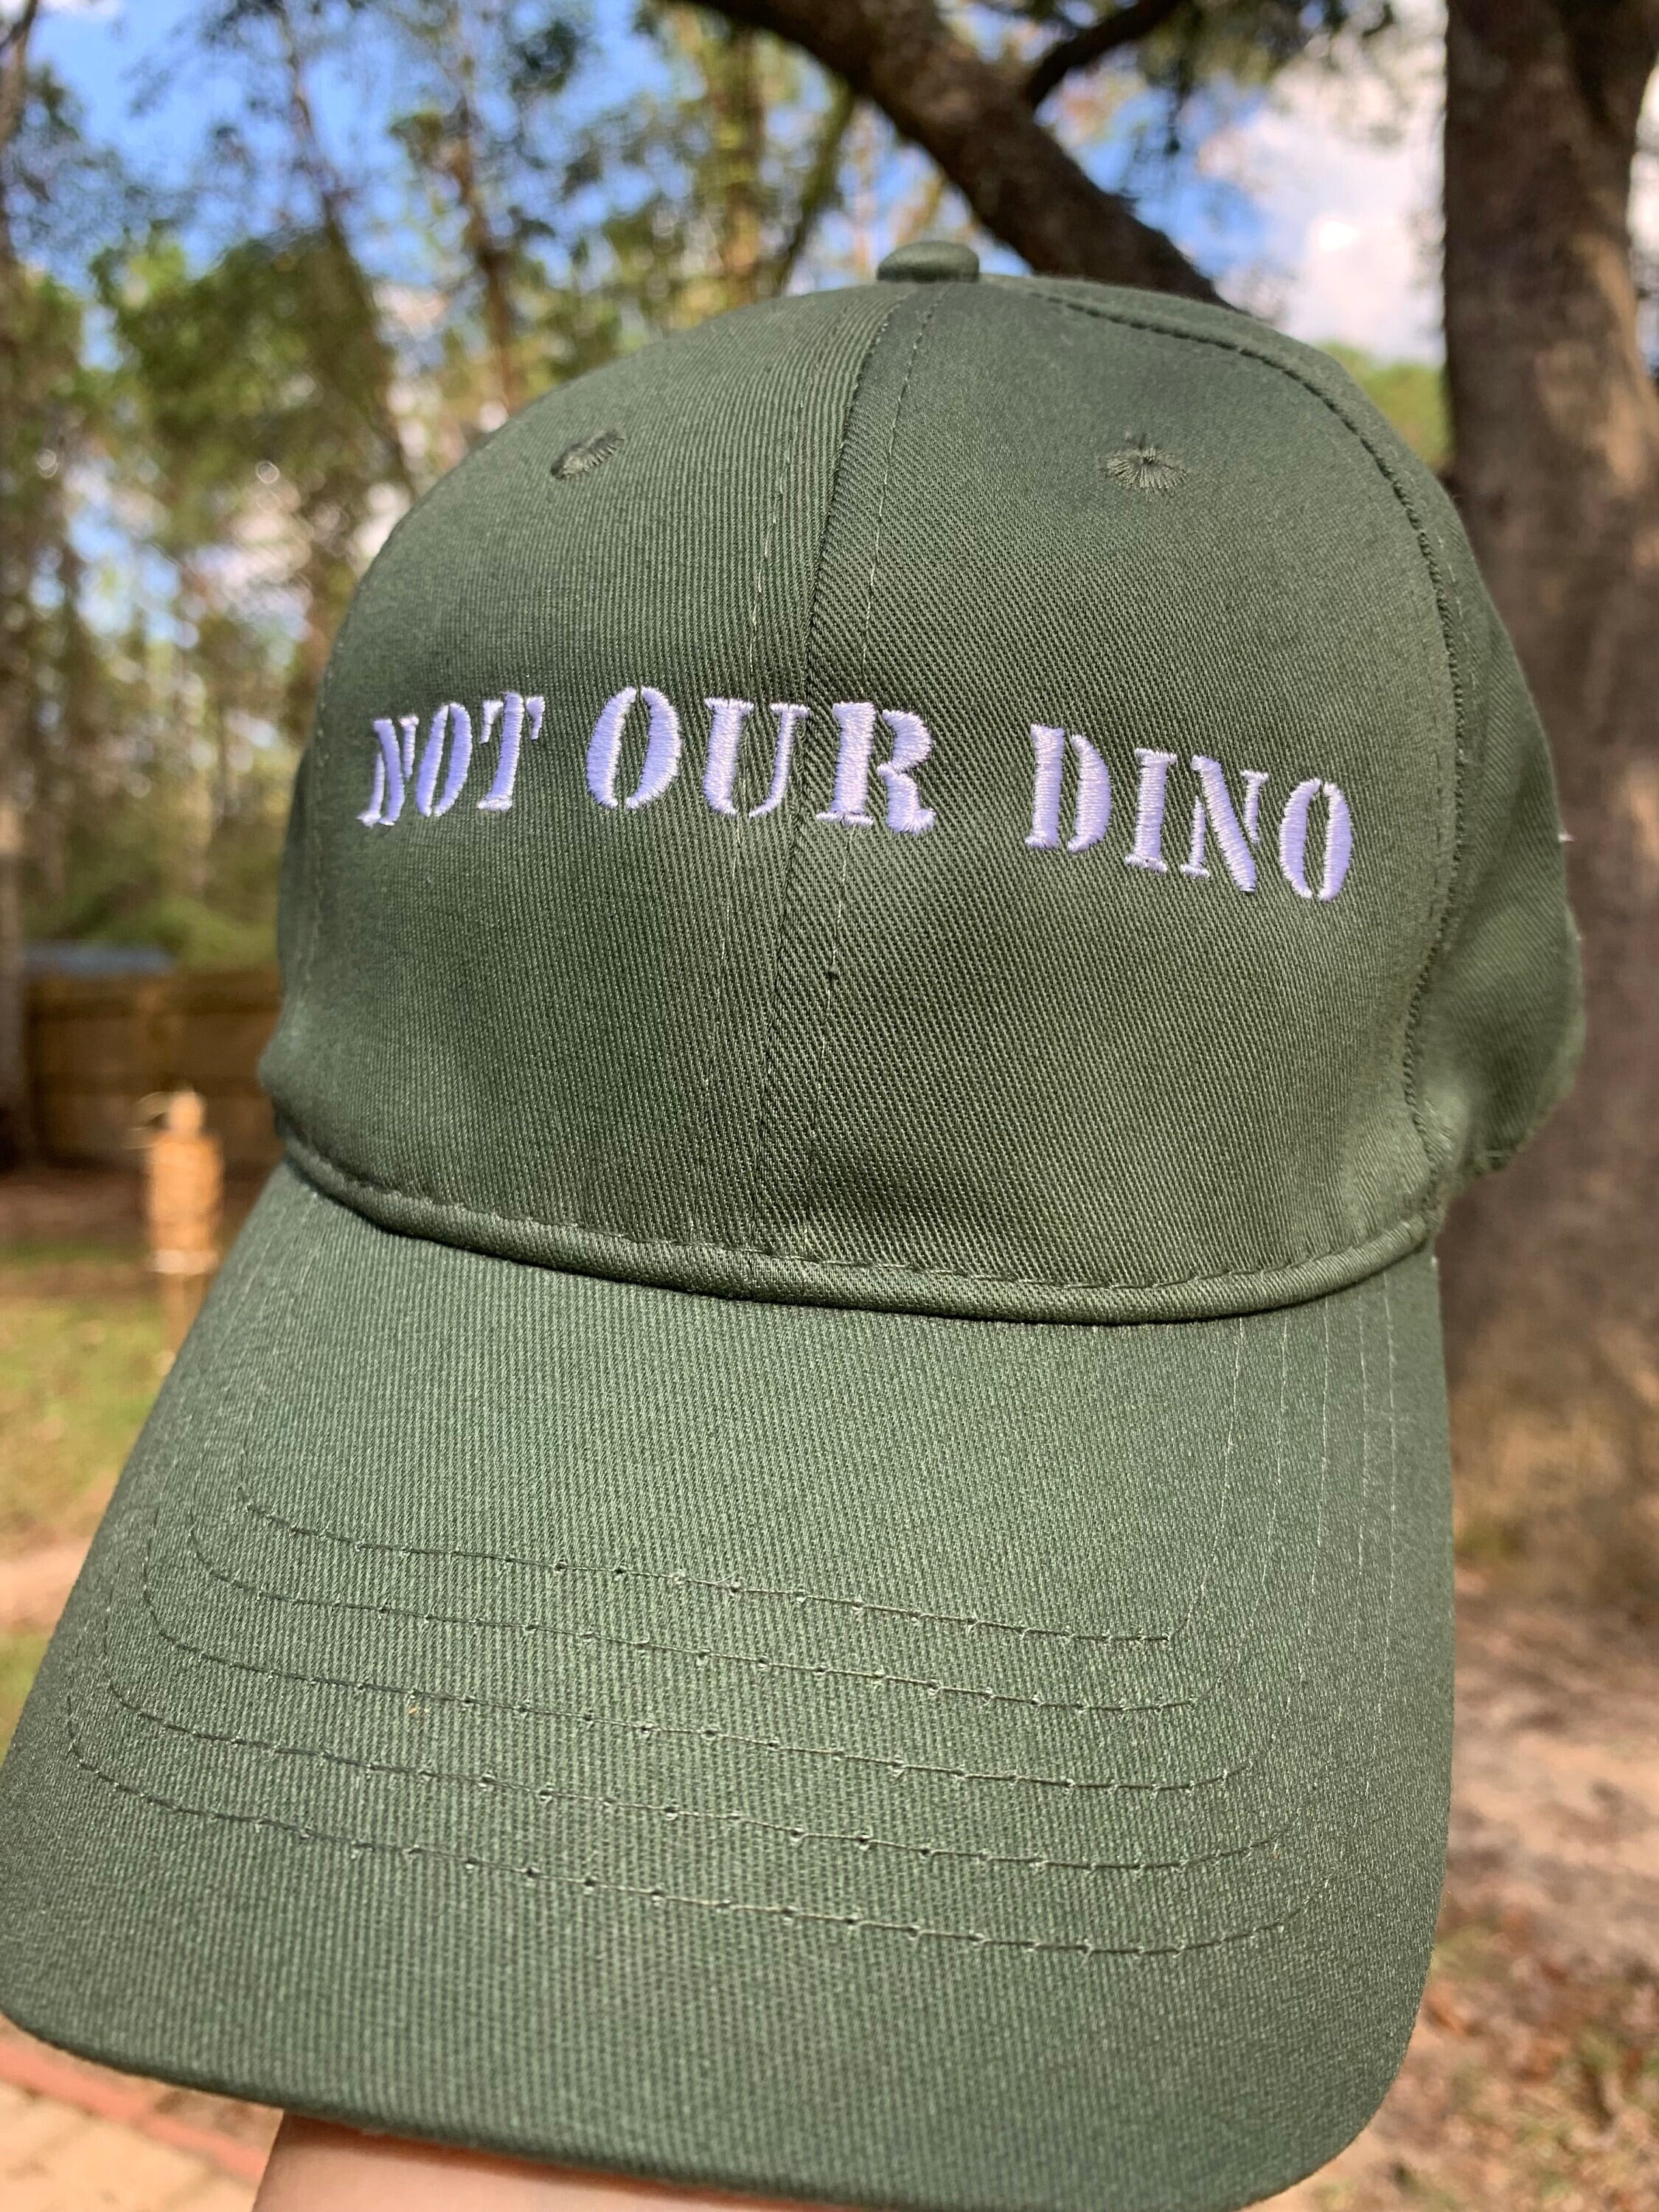 Chrome Dino | The Dinosaur Game | T-Rex Game Baseball Cap birthday Kids Hat  black Women's Hat Men's